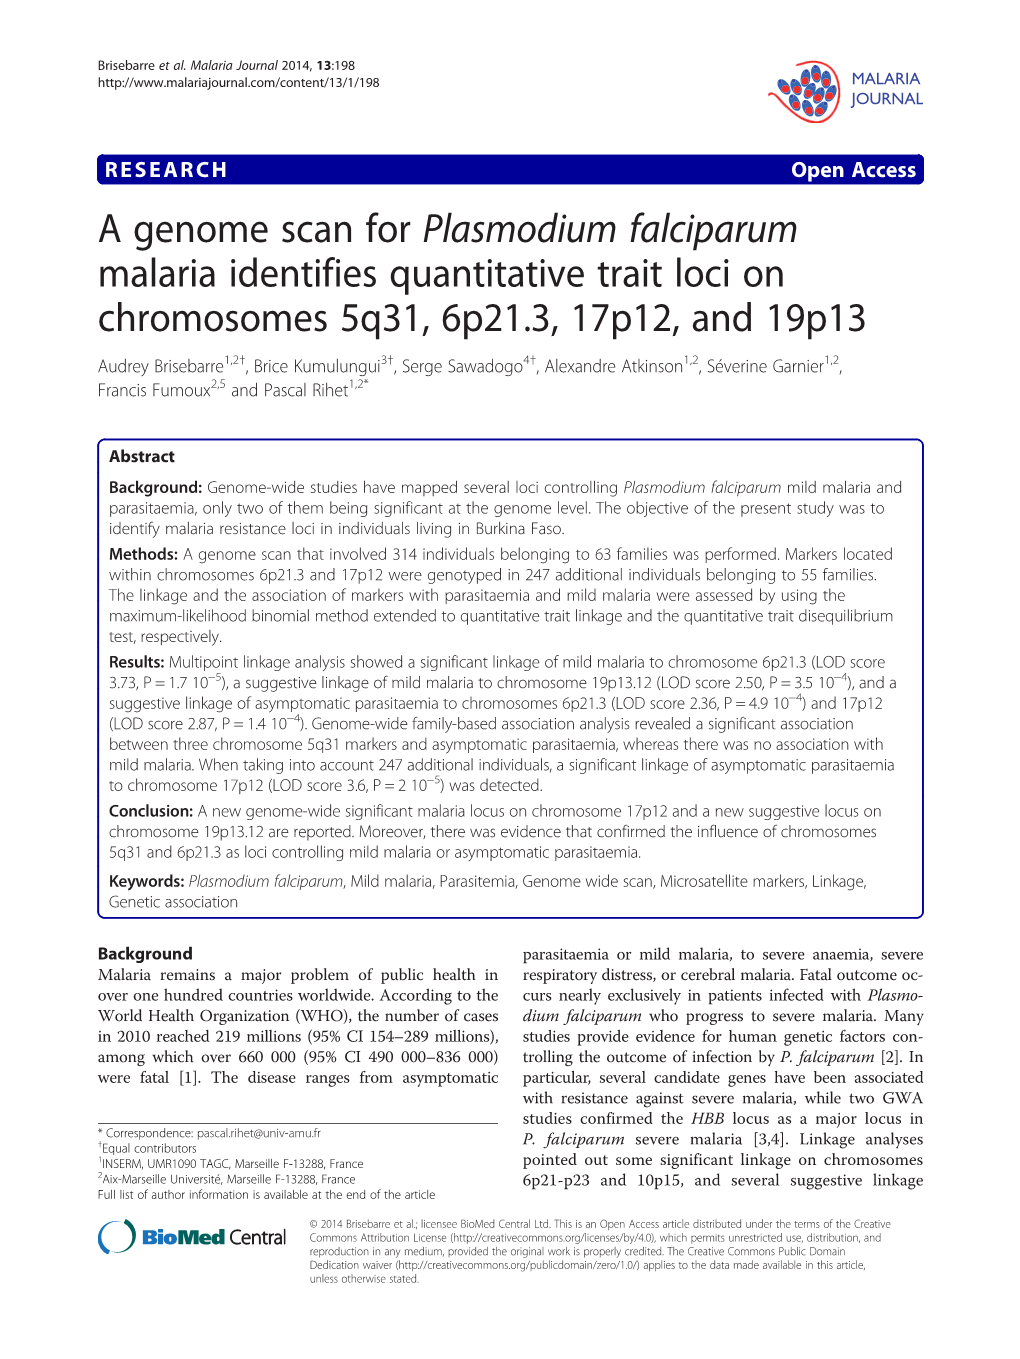 A Genome Scan for Plasmodium Falciparum Malaria Identifies Quantitative Trait Loci on Chromosomes 5Q31, 6P21.3, 17P12, and 19P13